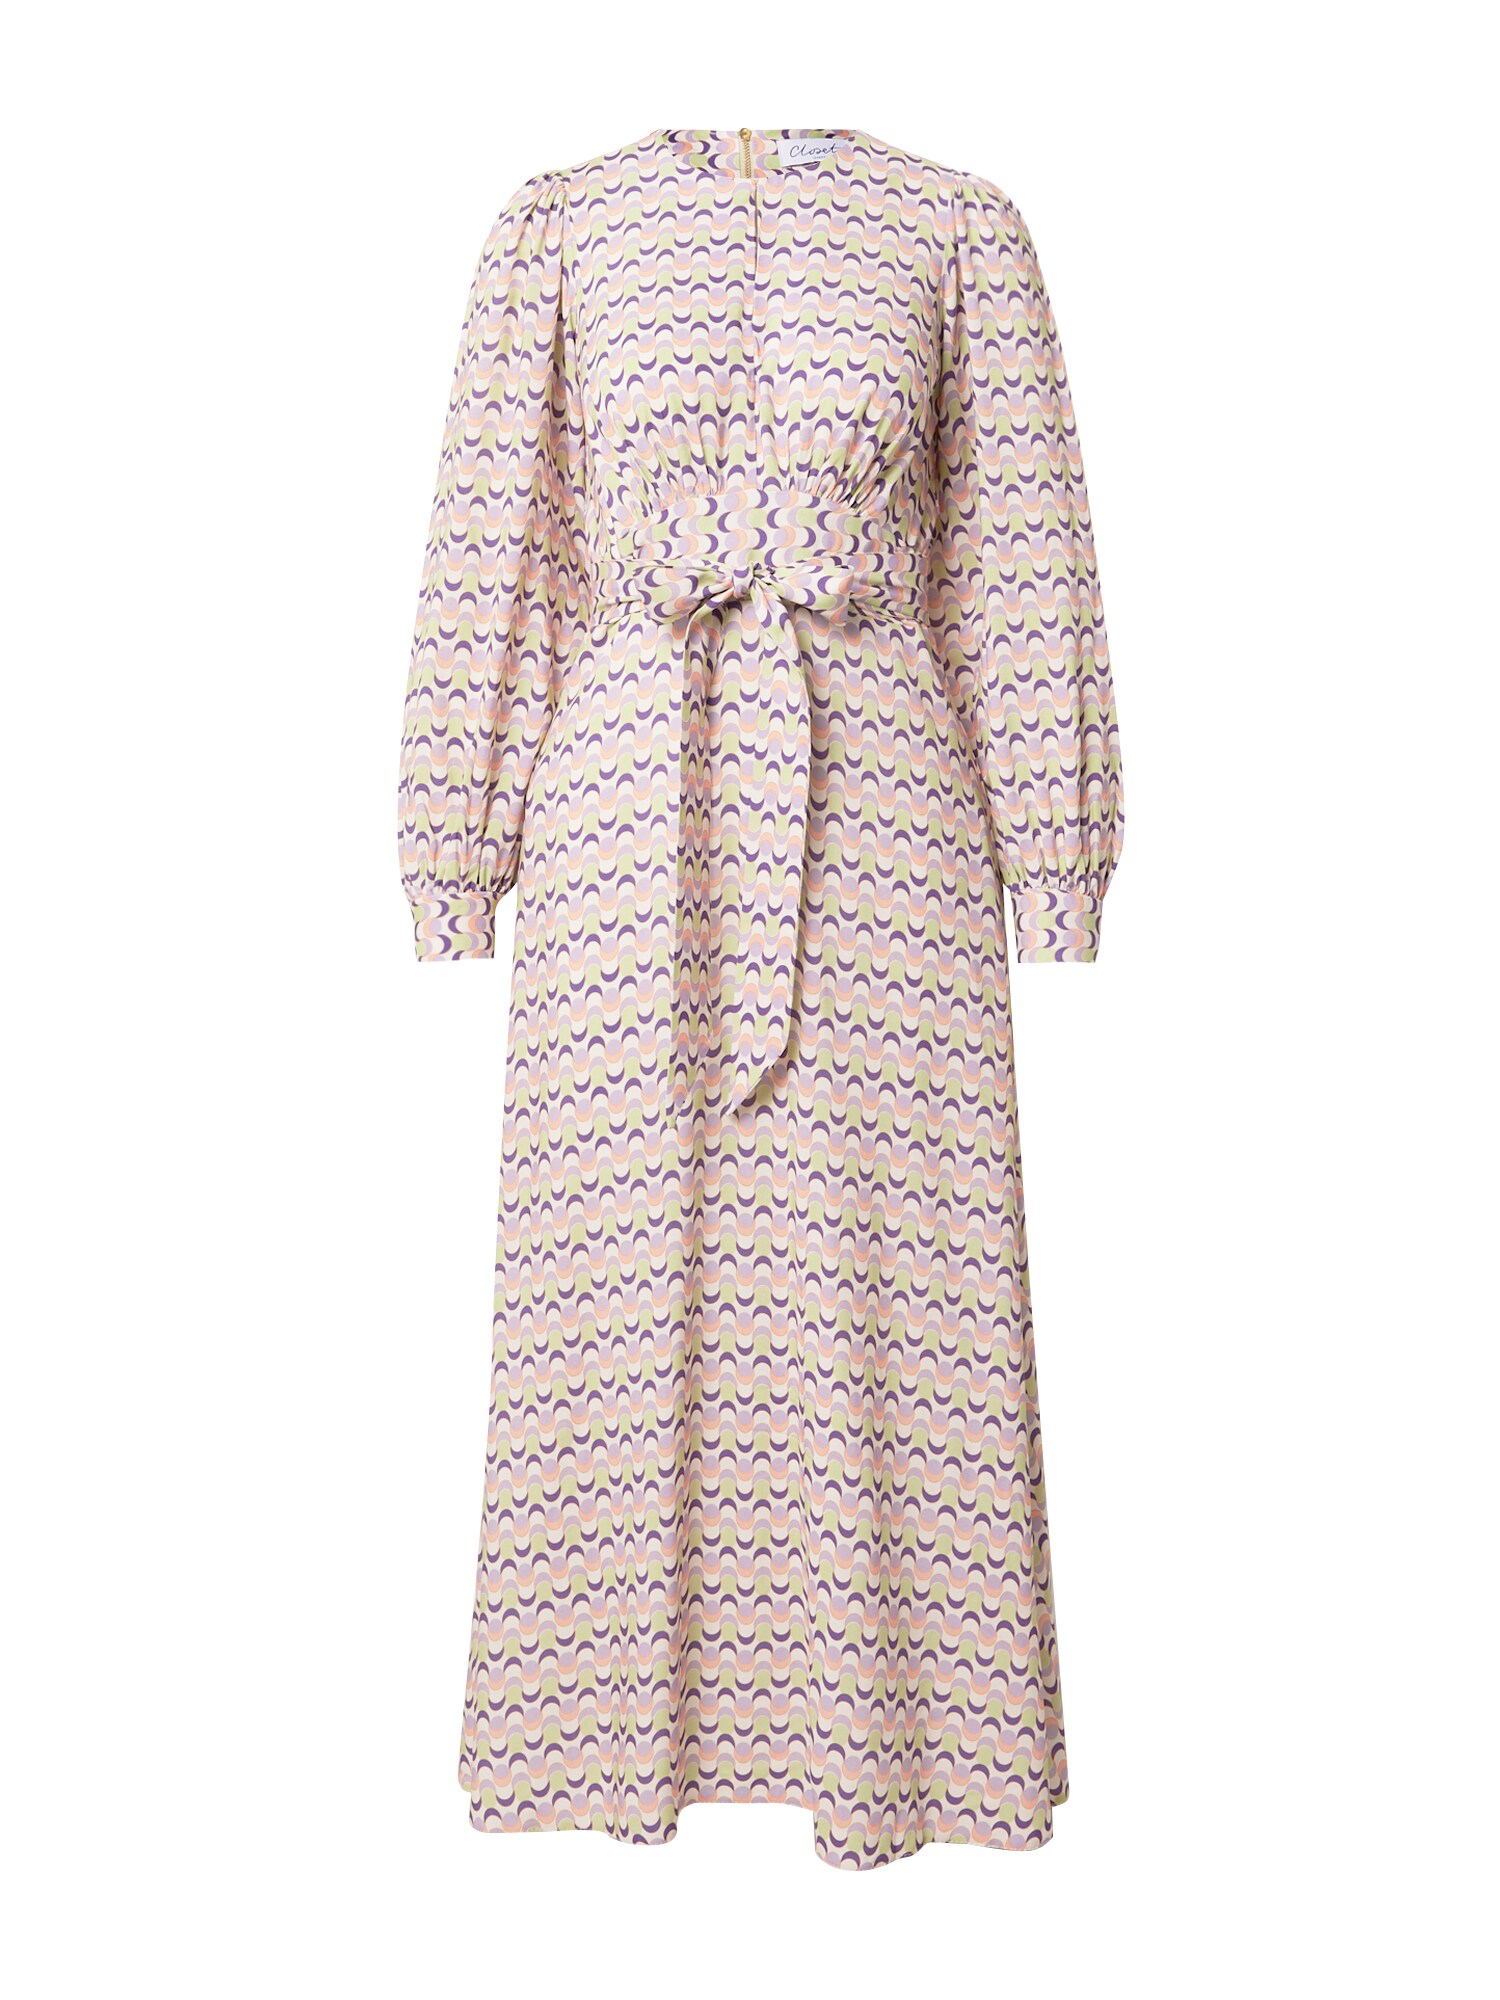 Closet London Palaidinės tipo suknelė pastelinė žalia / purpurinė / šviesiai violetinė / persikų spalva / rožinė